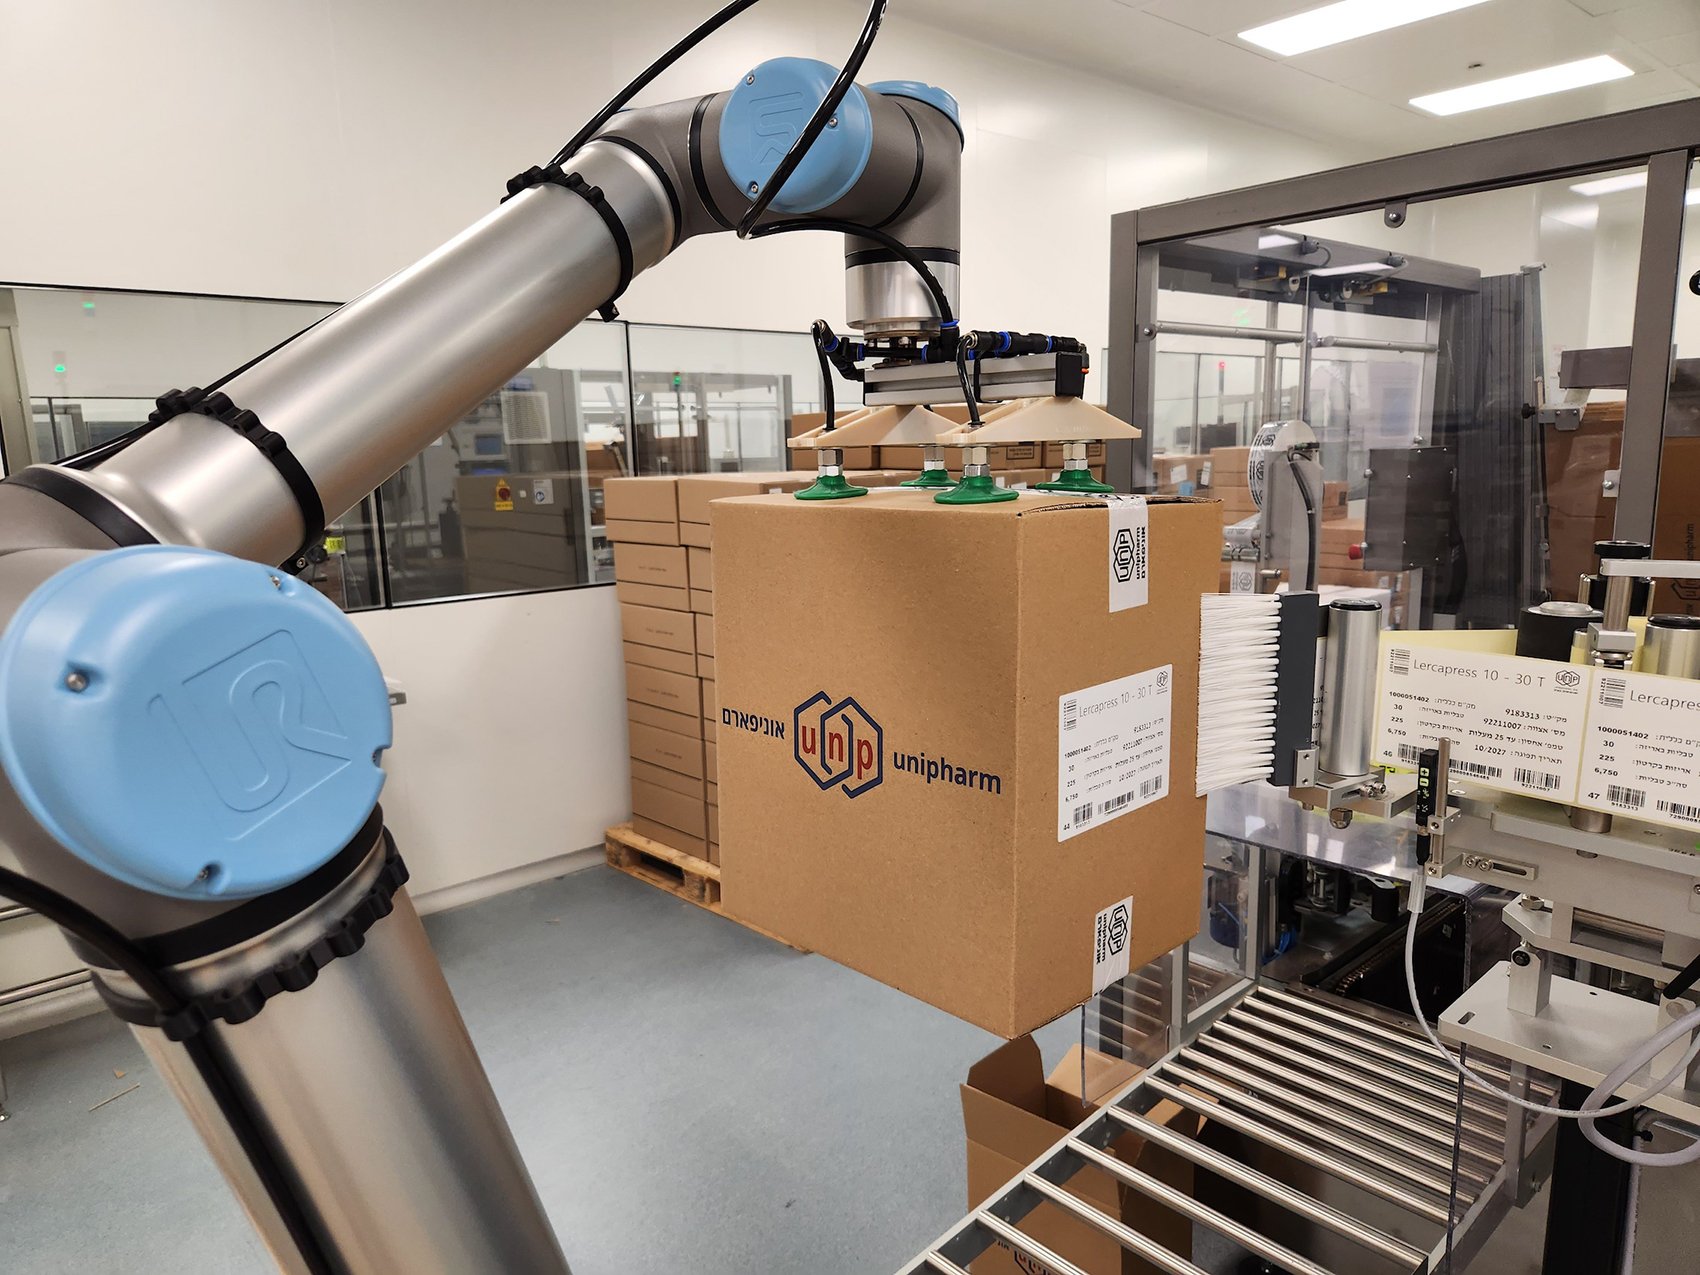 חברת התרופות הישראלית אוניפארם שילבה בקווי האריזה רובוטים שיתופיים חסכוניים, בטיחותיים, ותורמים להגדלת התפוקה